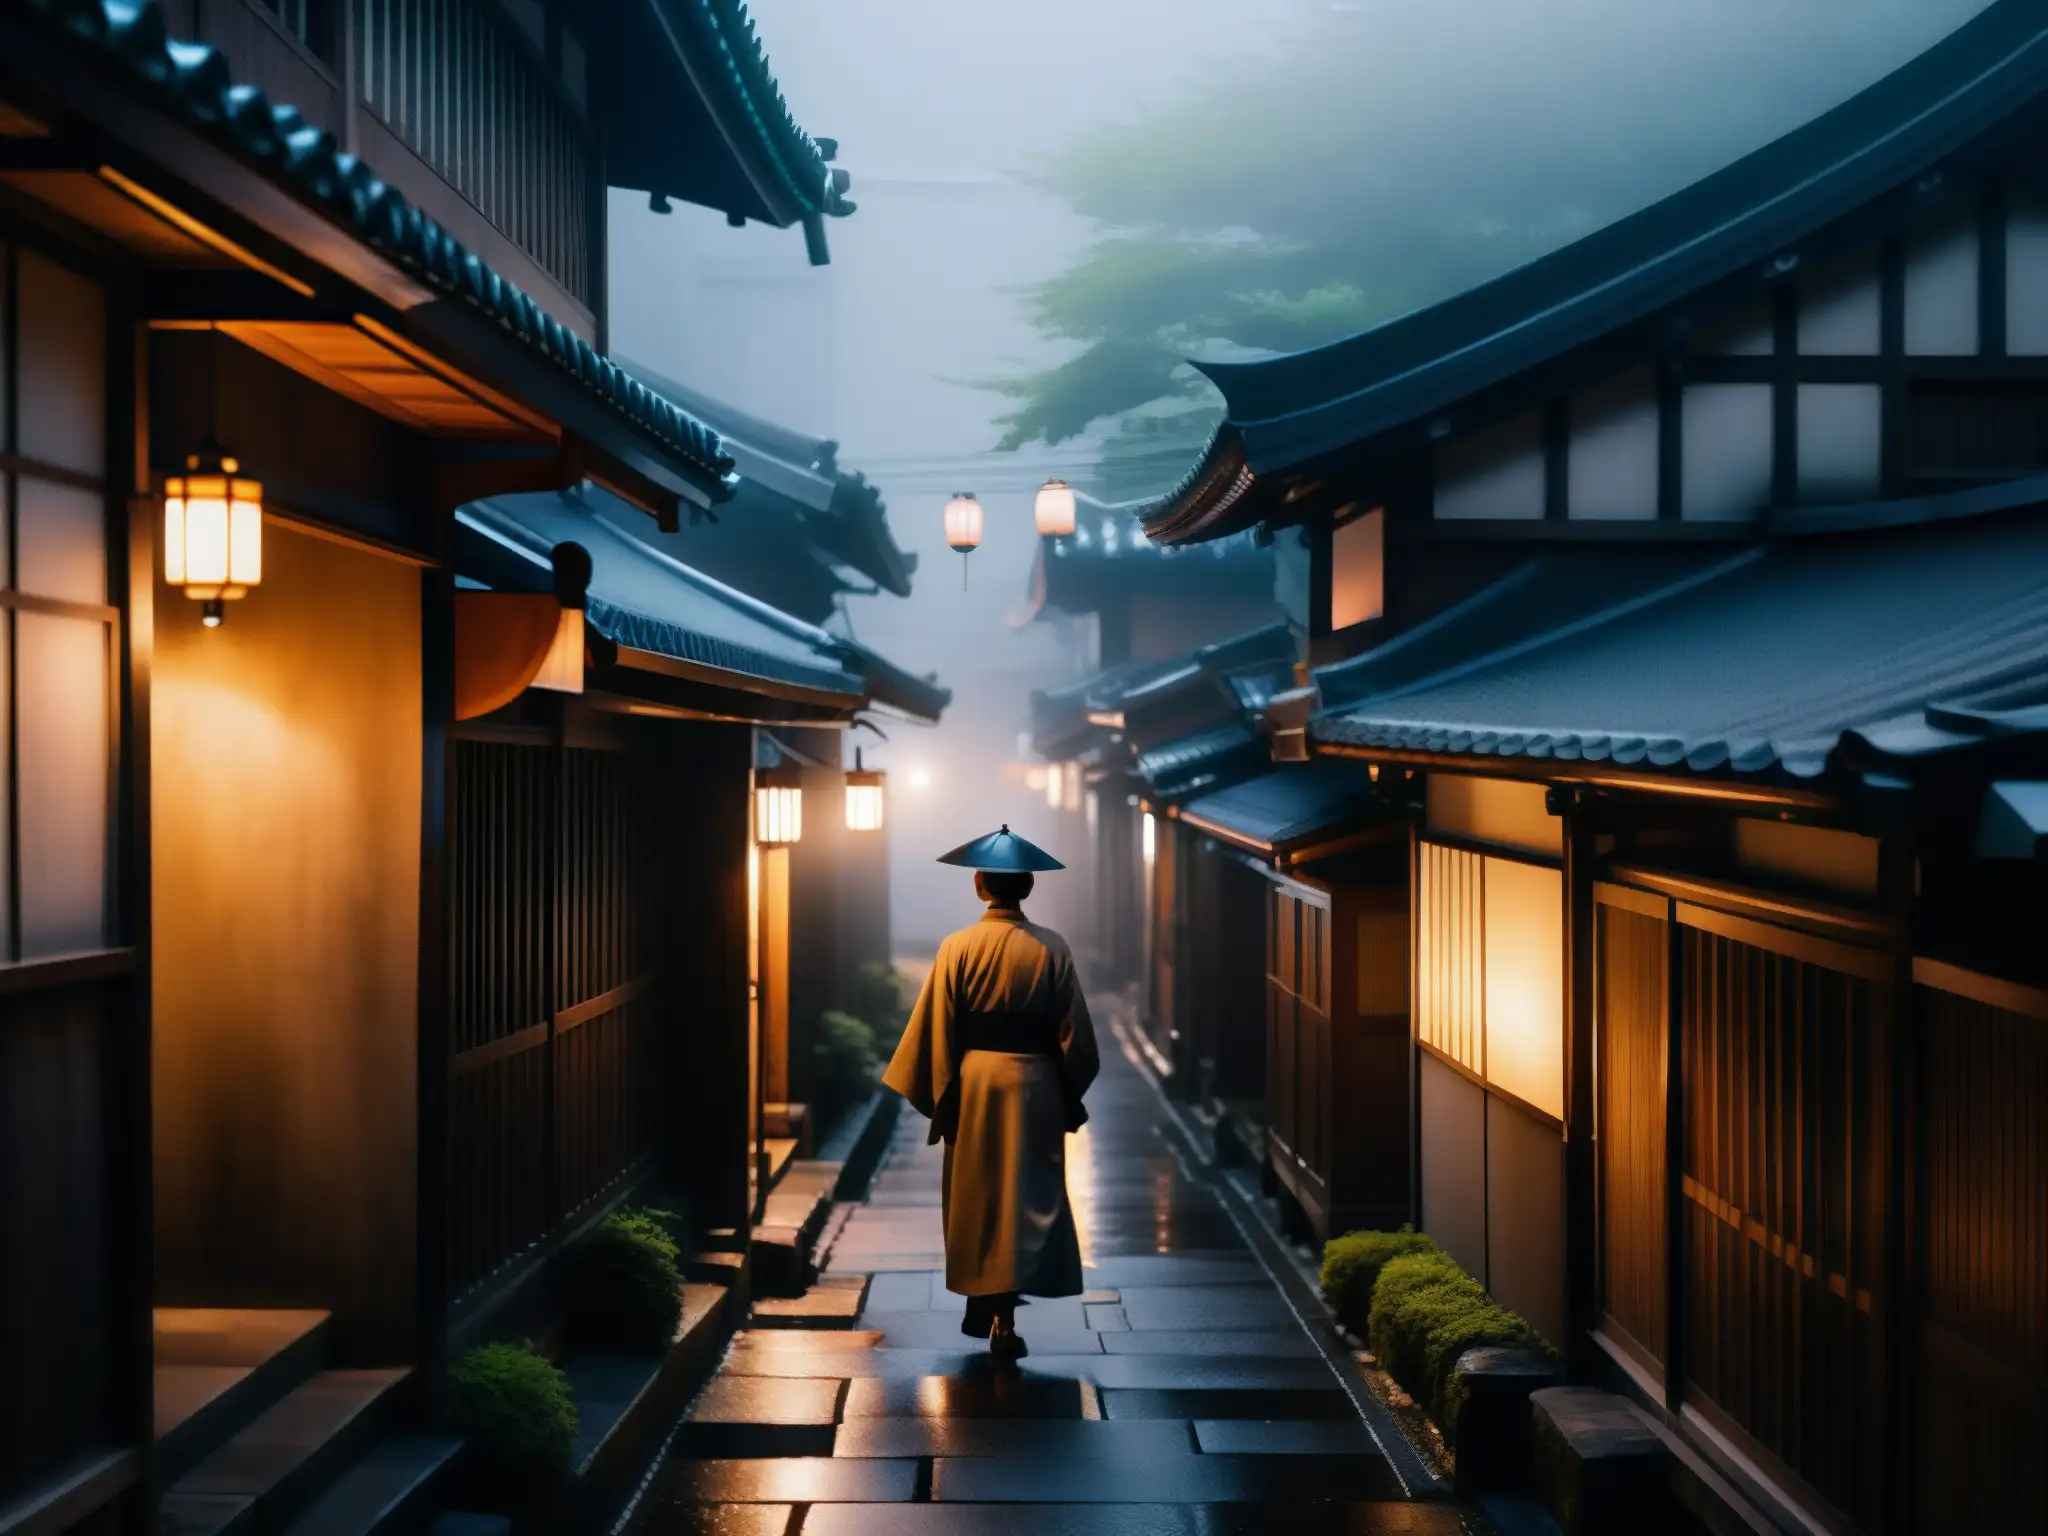 Un misterioso callejón de Tokio bañado en neblina, donde una figura solitaria camina entre antiguas edificaciones